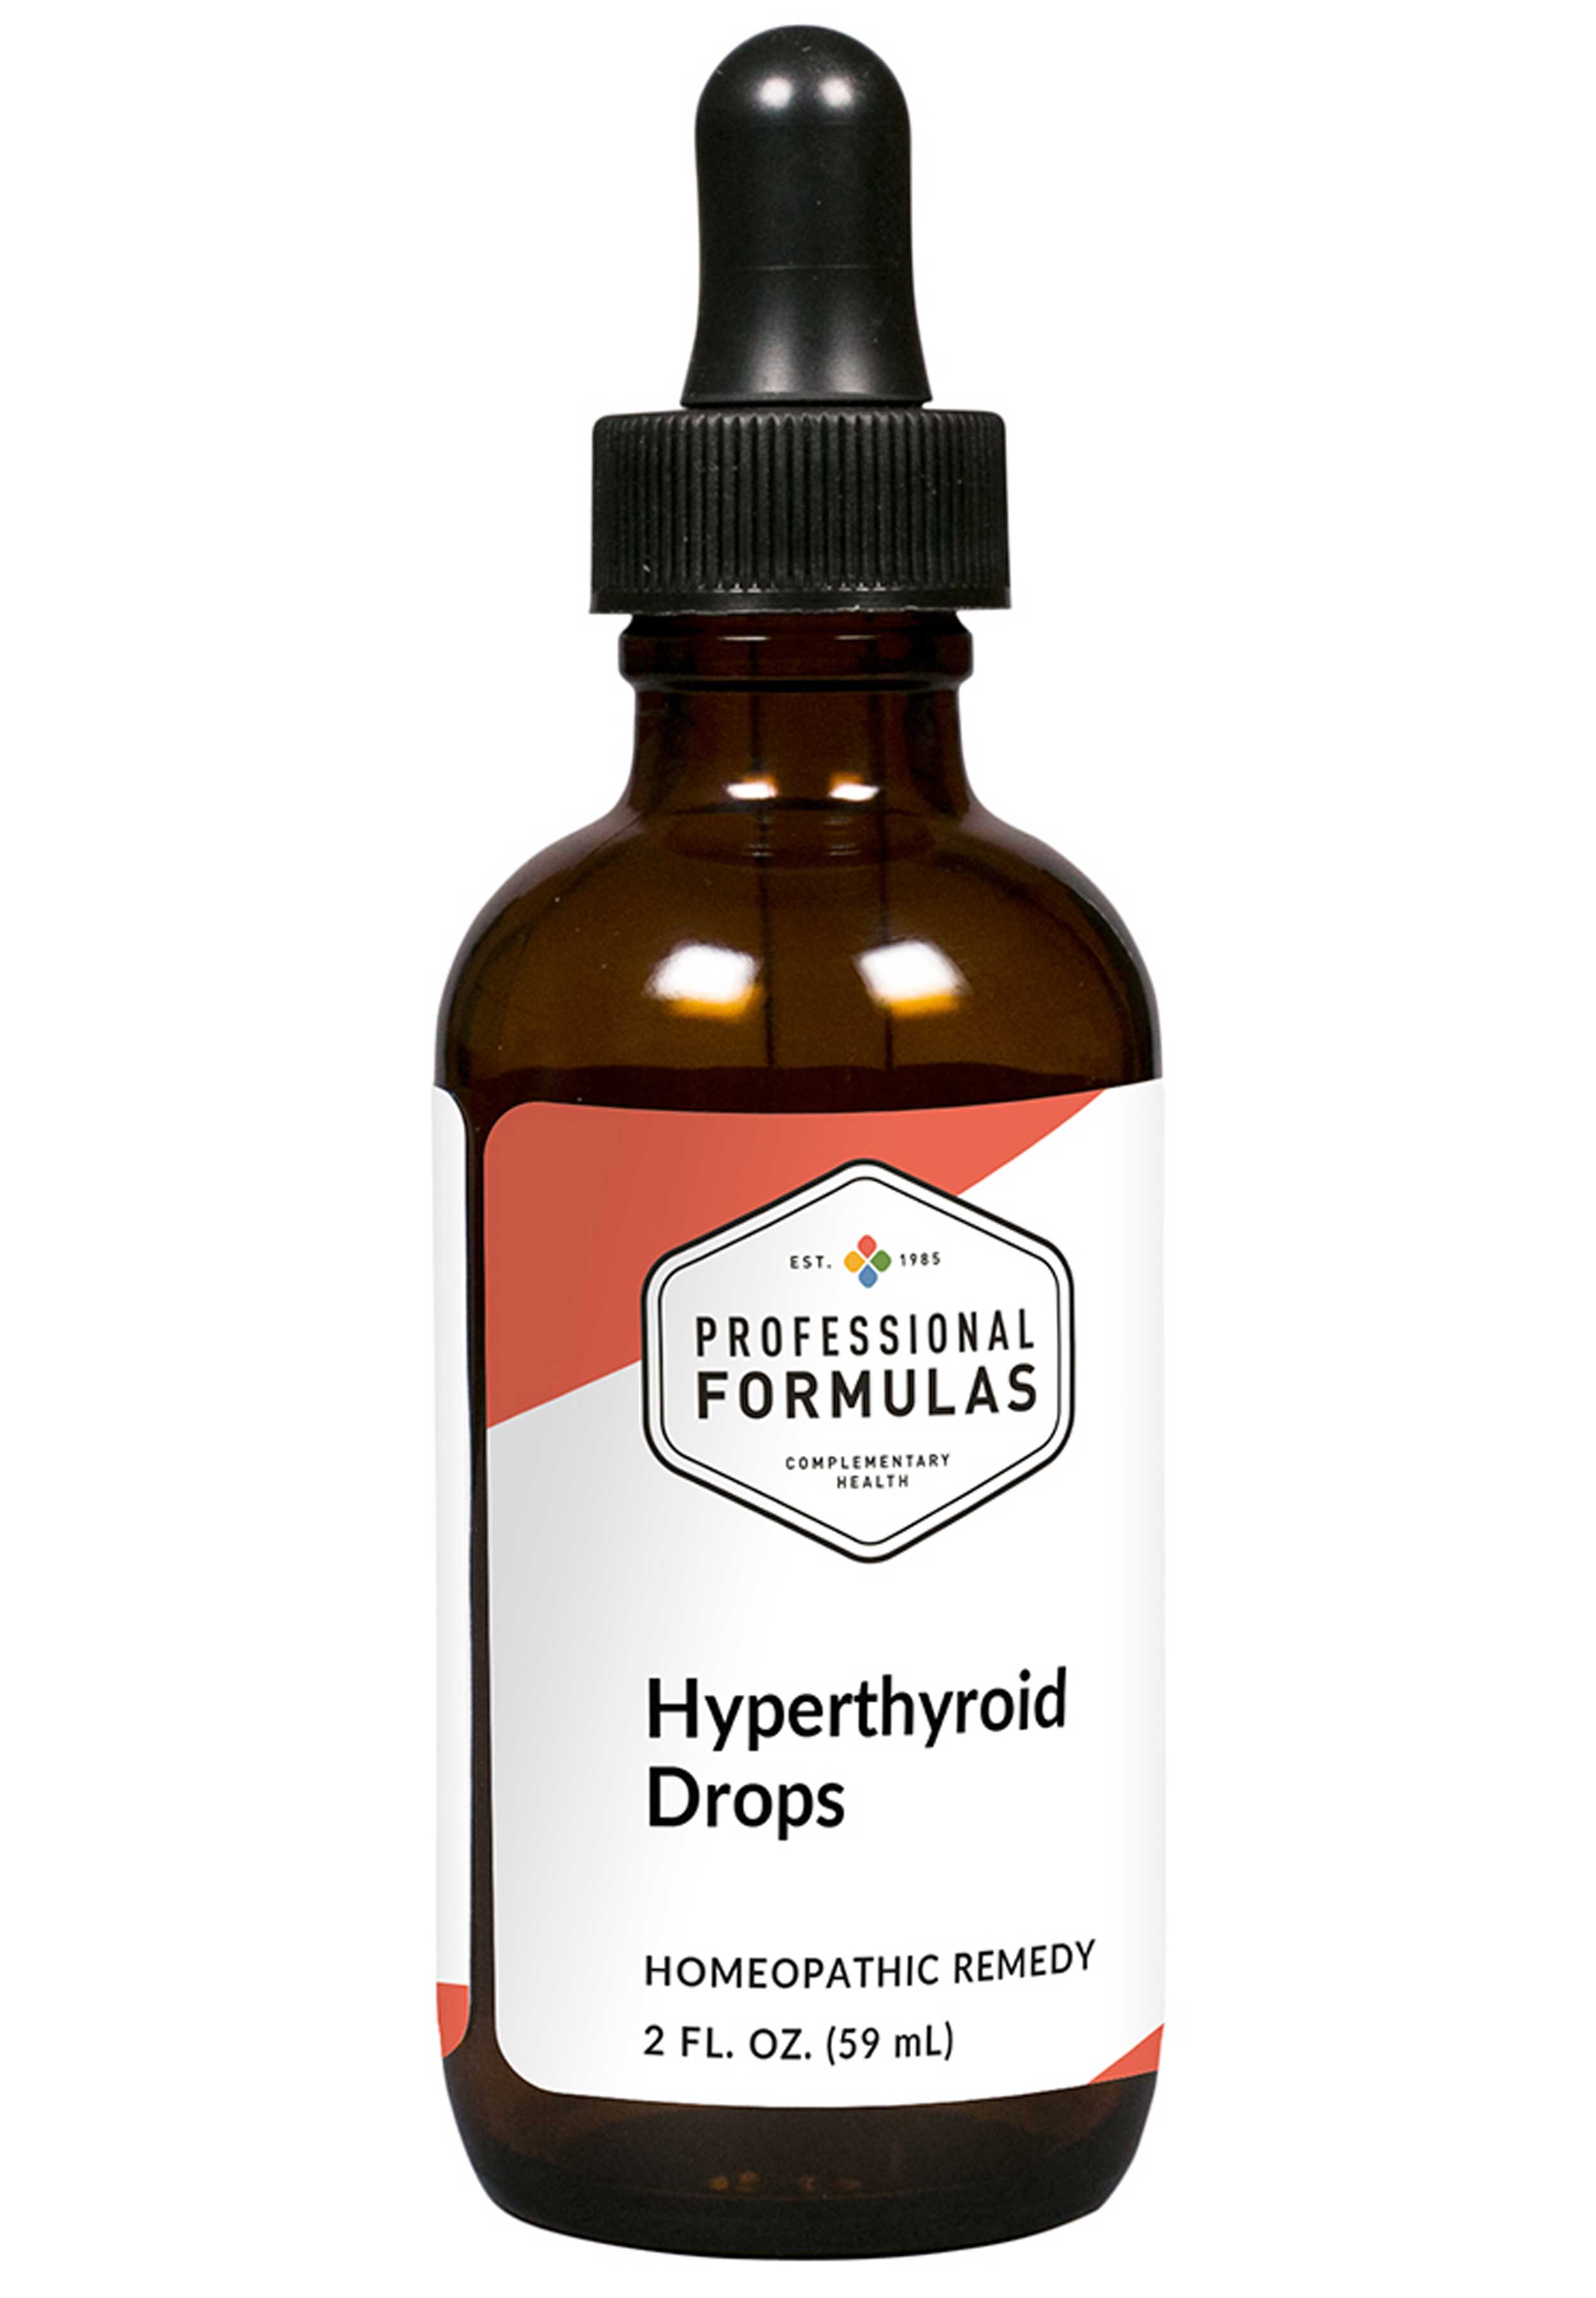 Professional Formulas Hyperthyroid Drops